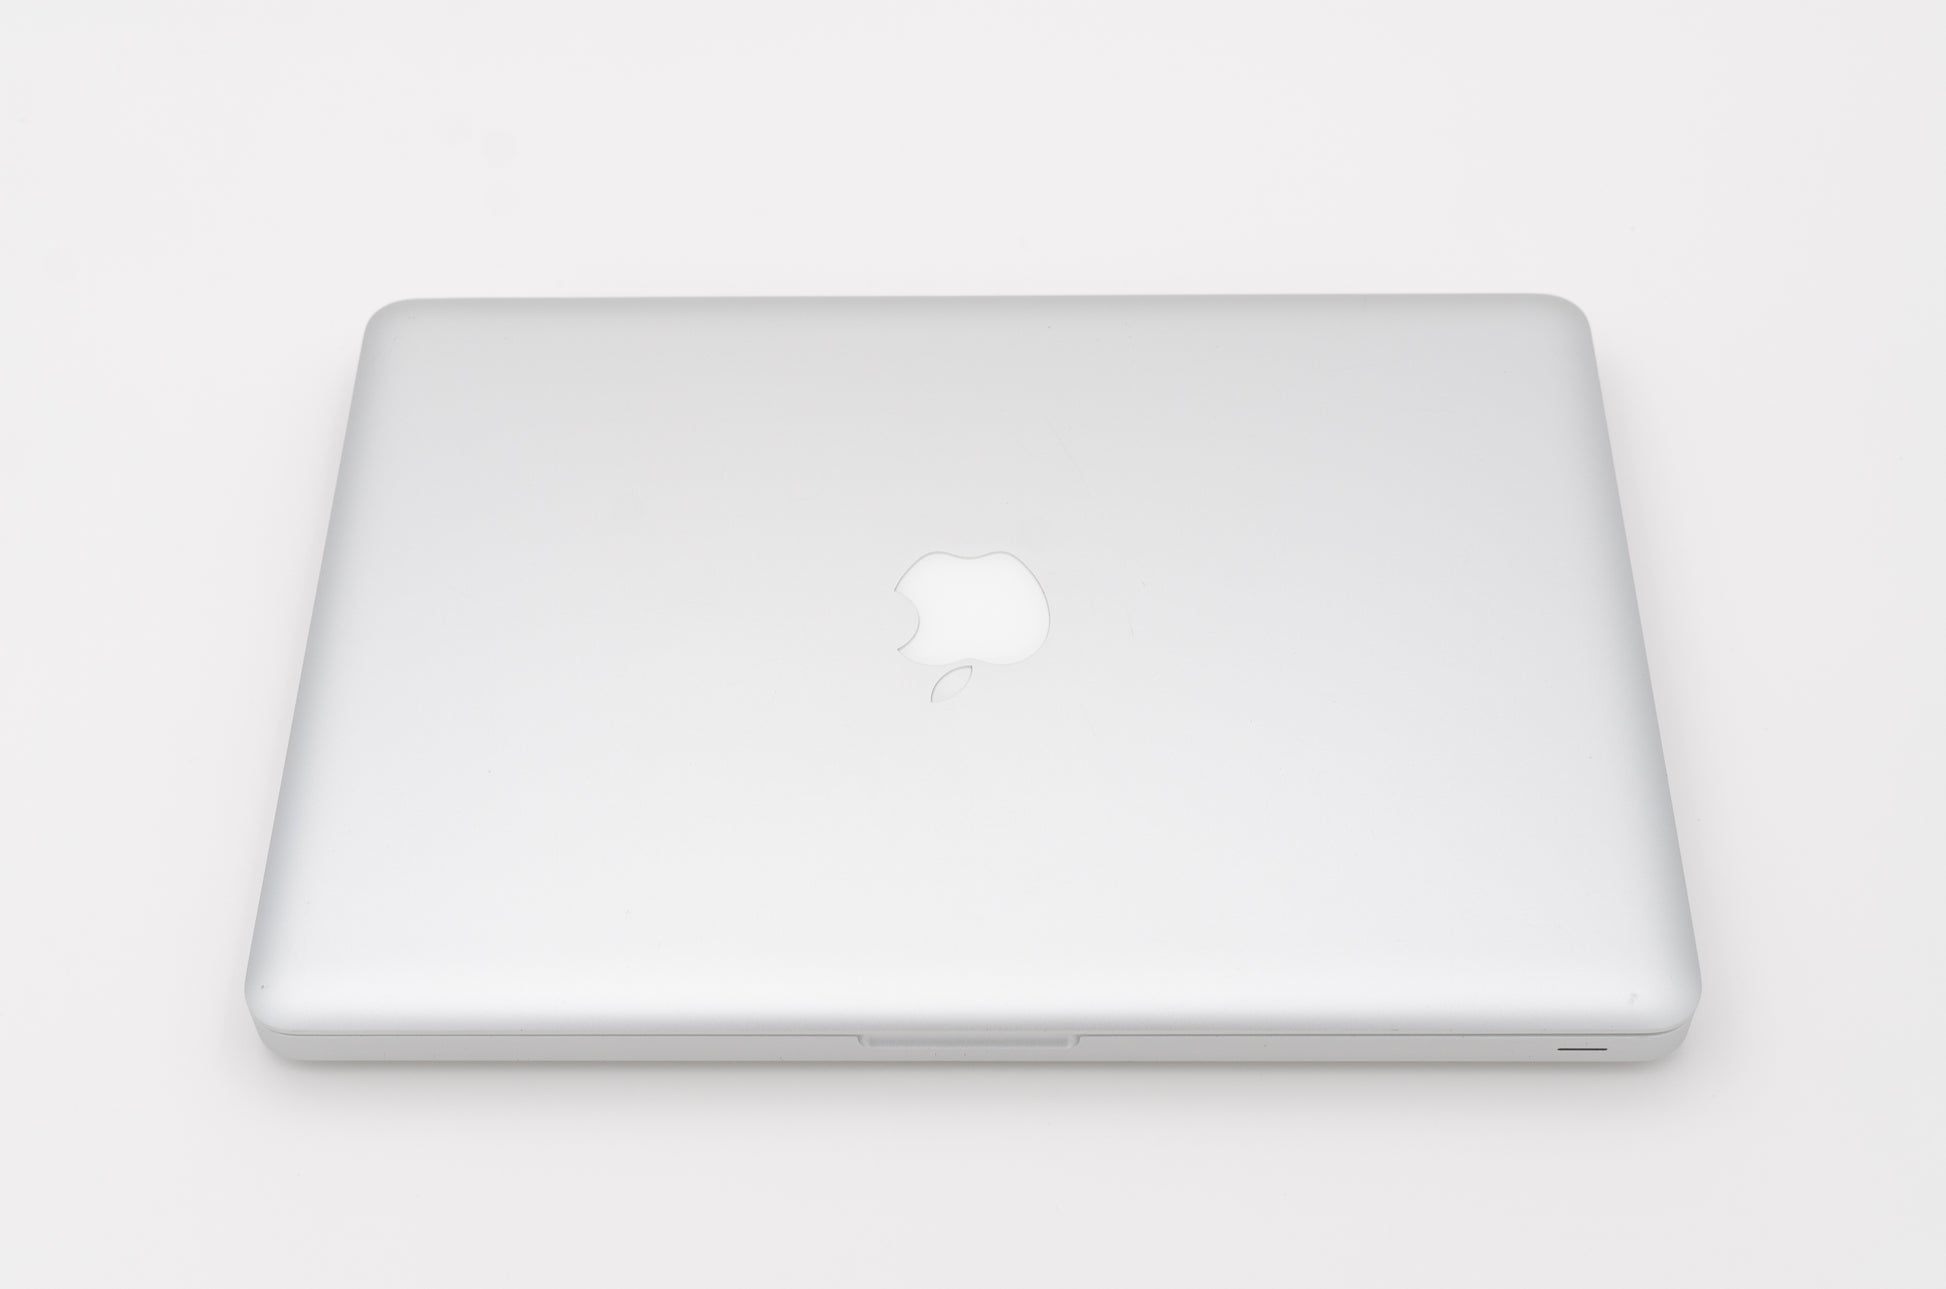 apple-late-2011-13.3-inch-macbook-pro-a1278-aluminum-dci5 - 2.4ghz processor, 4gb ram, hd 3000 - 348mb gpu-md313ll/a-3